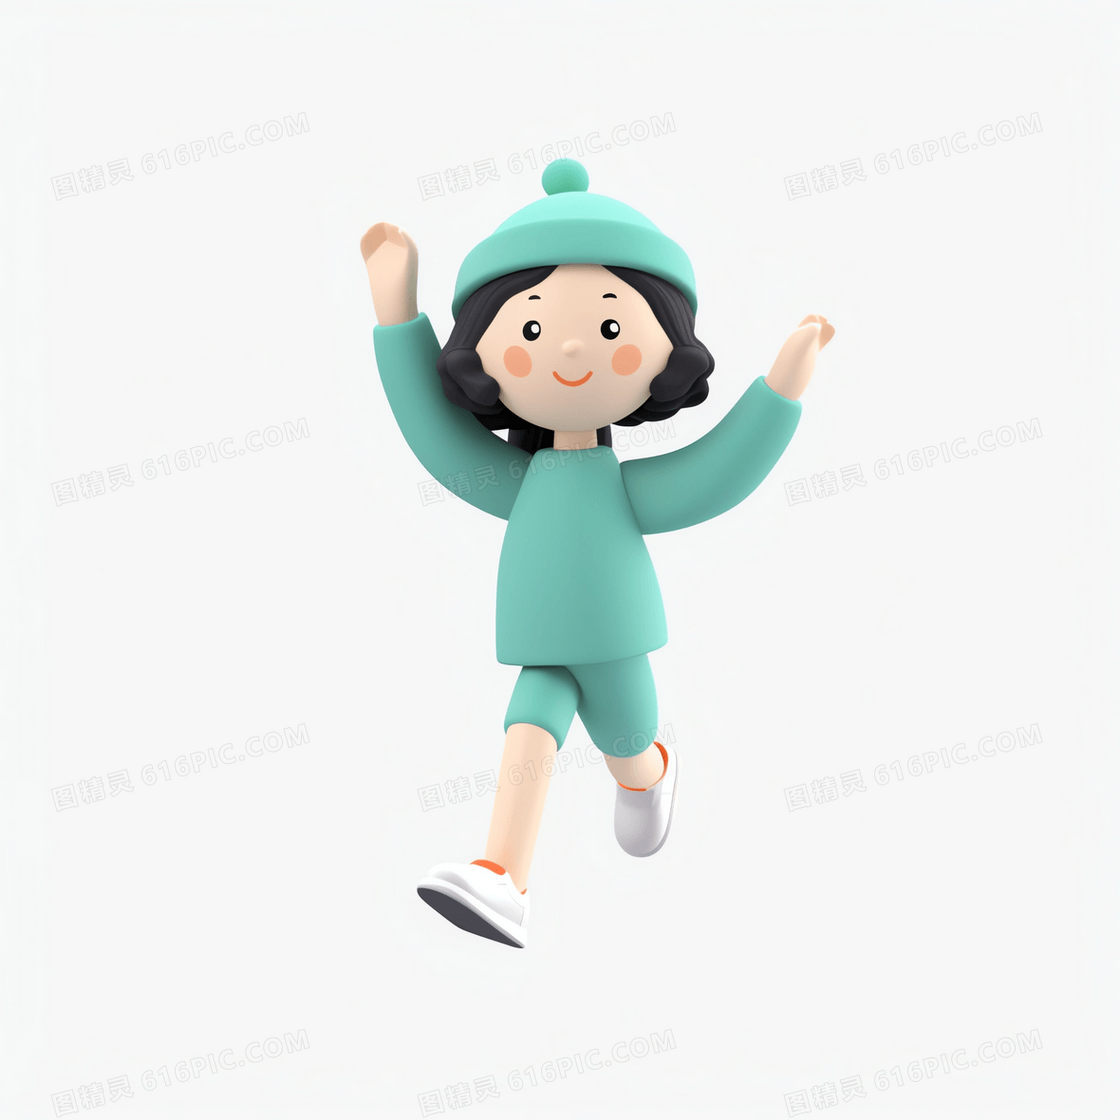 戴绿色帽子跳跃奔跑的可爱小人3D人物模型